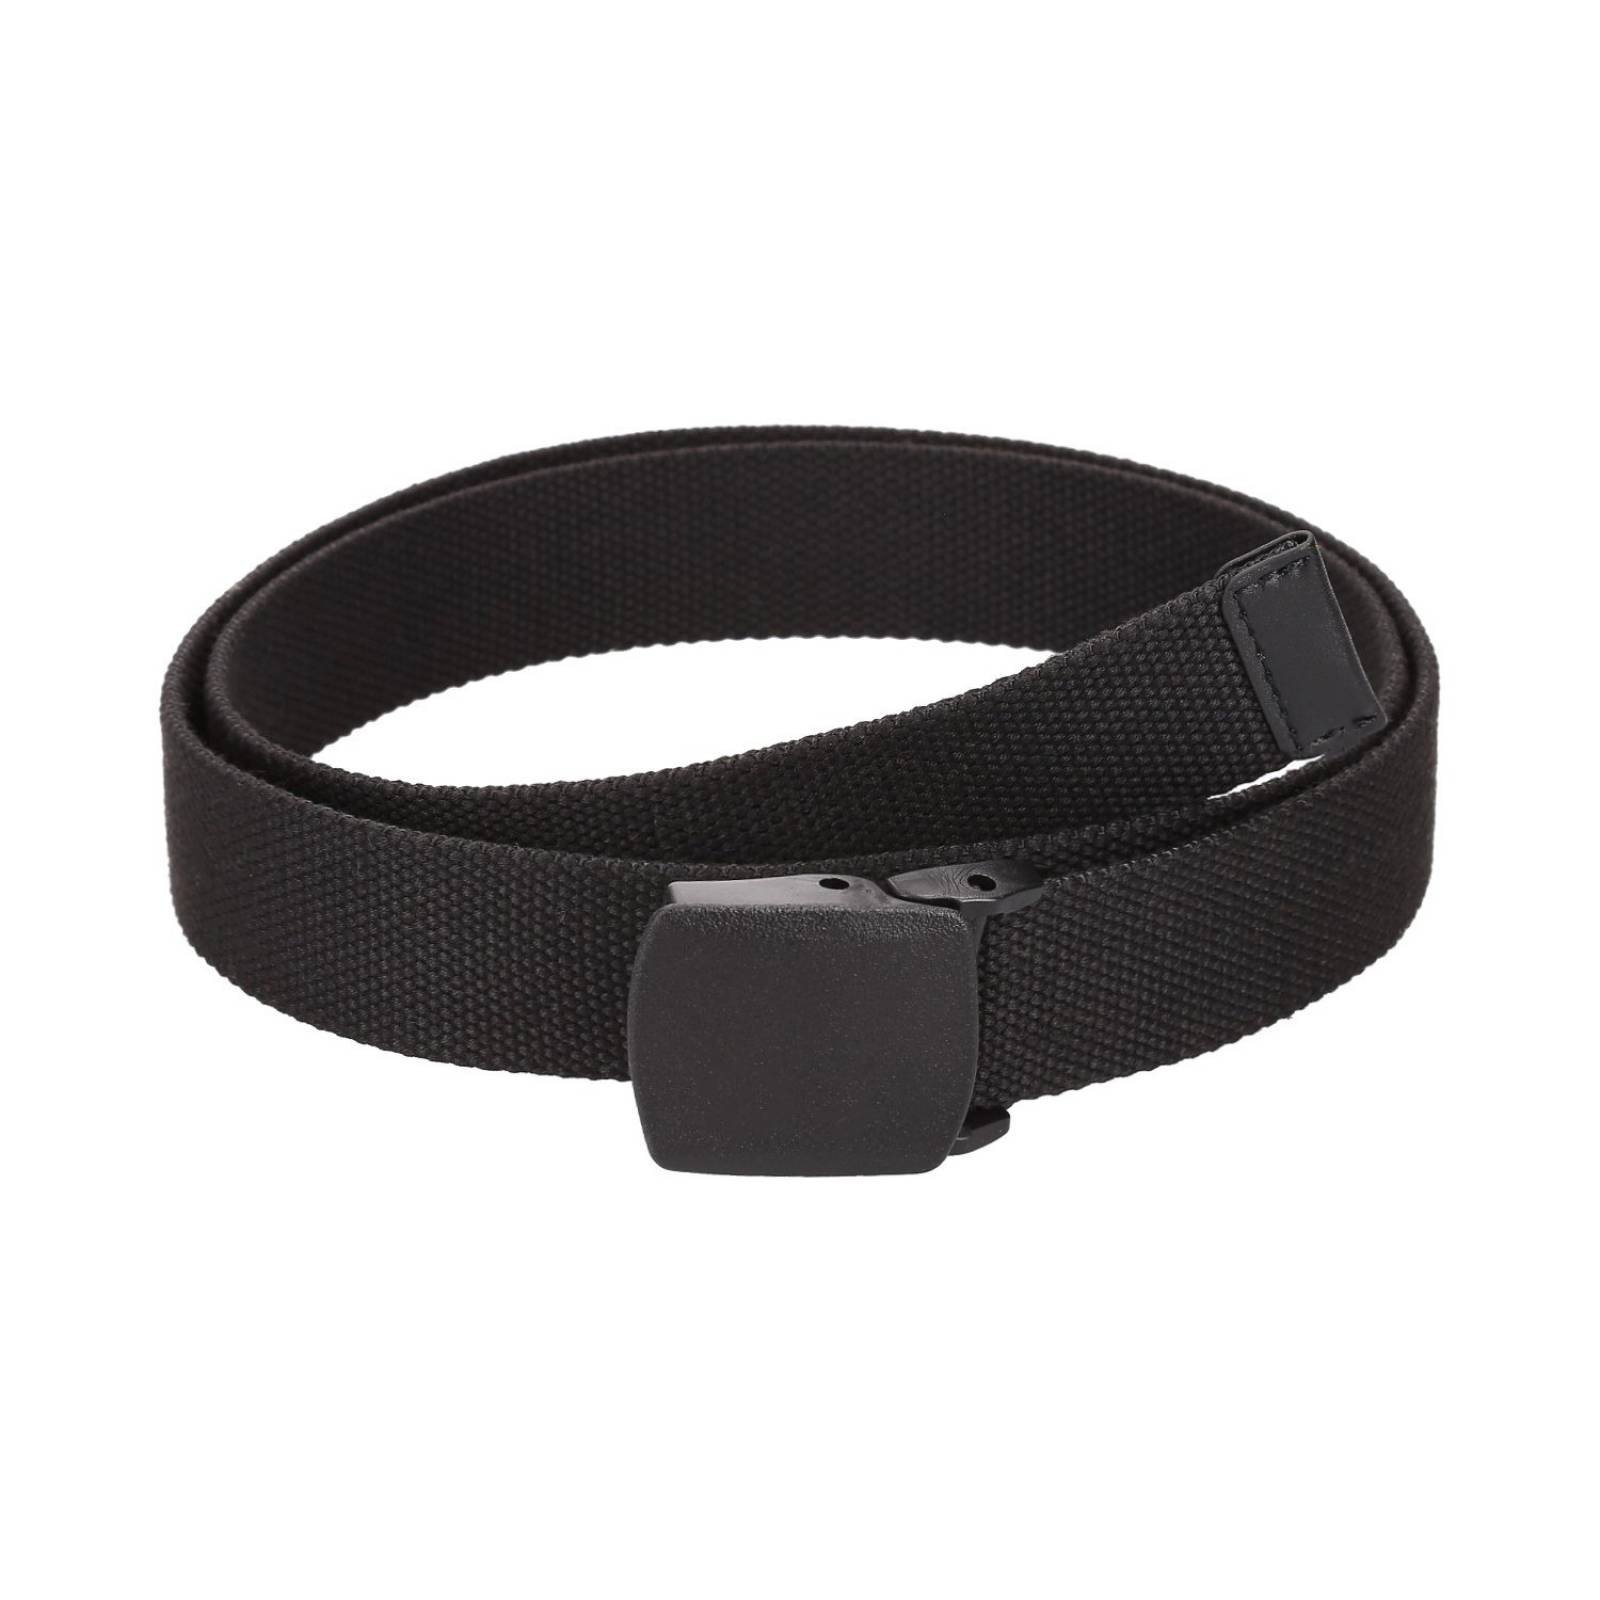 Cinturón Textil Poliéster Negro Con Hebilla A Presión Rectangular